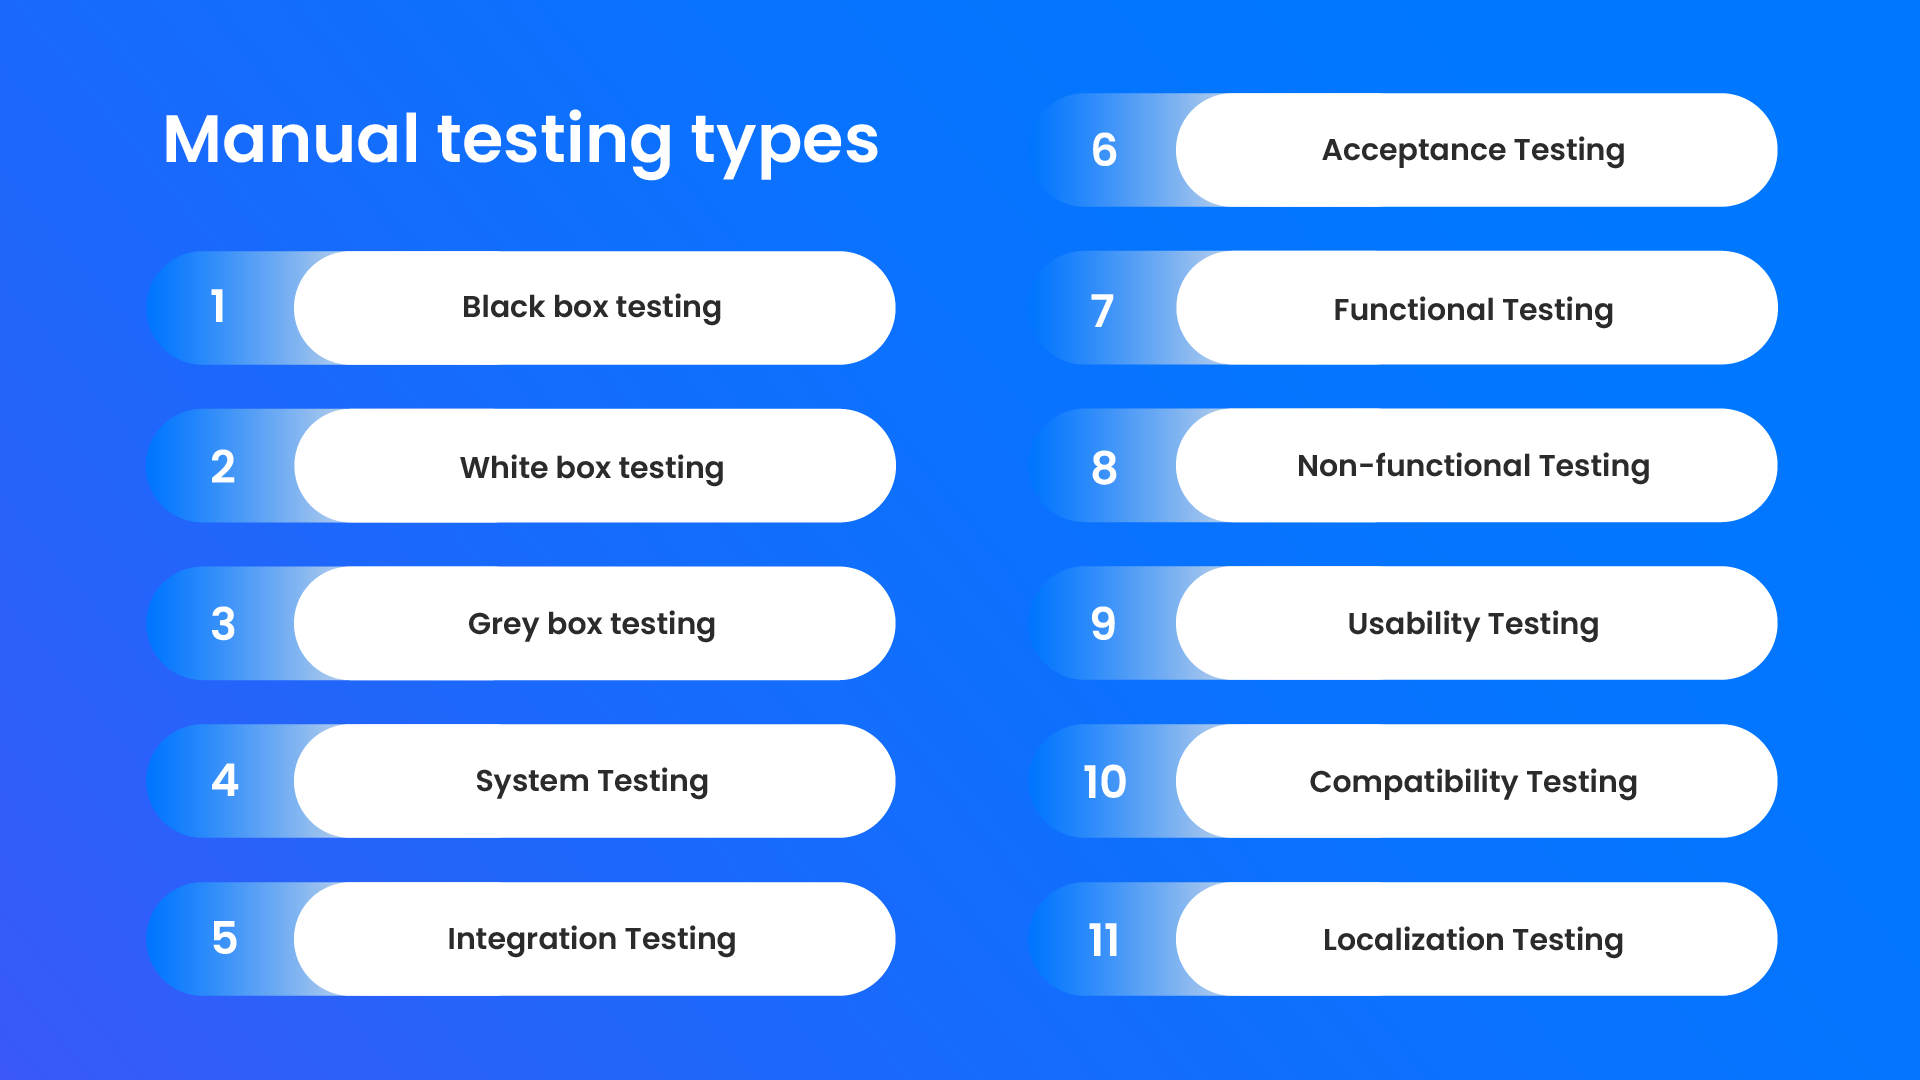 Manual testing types